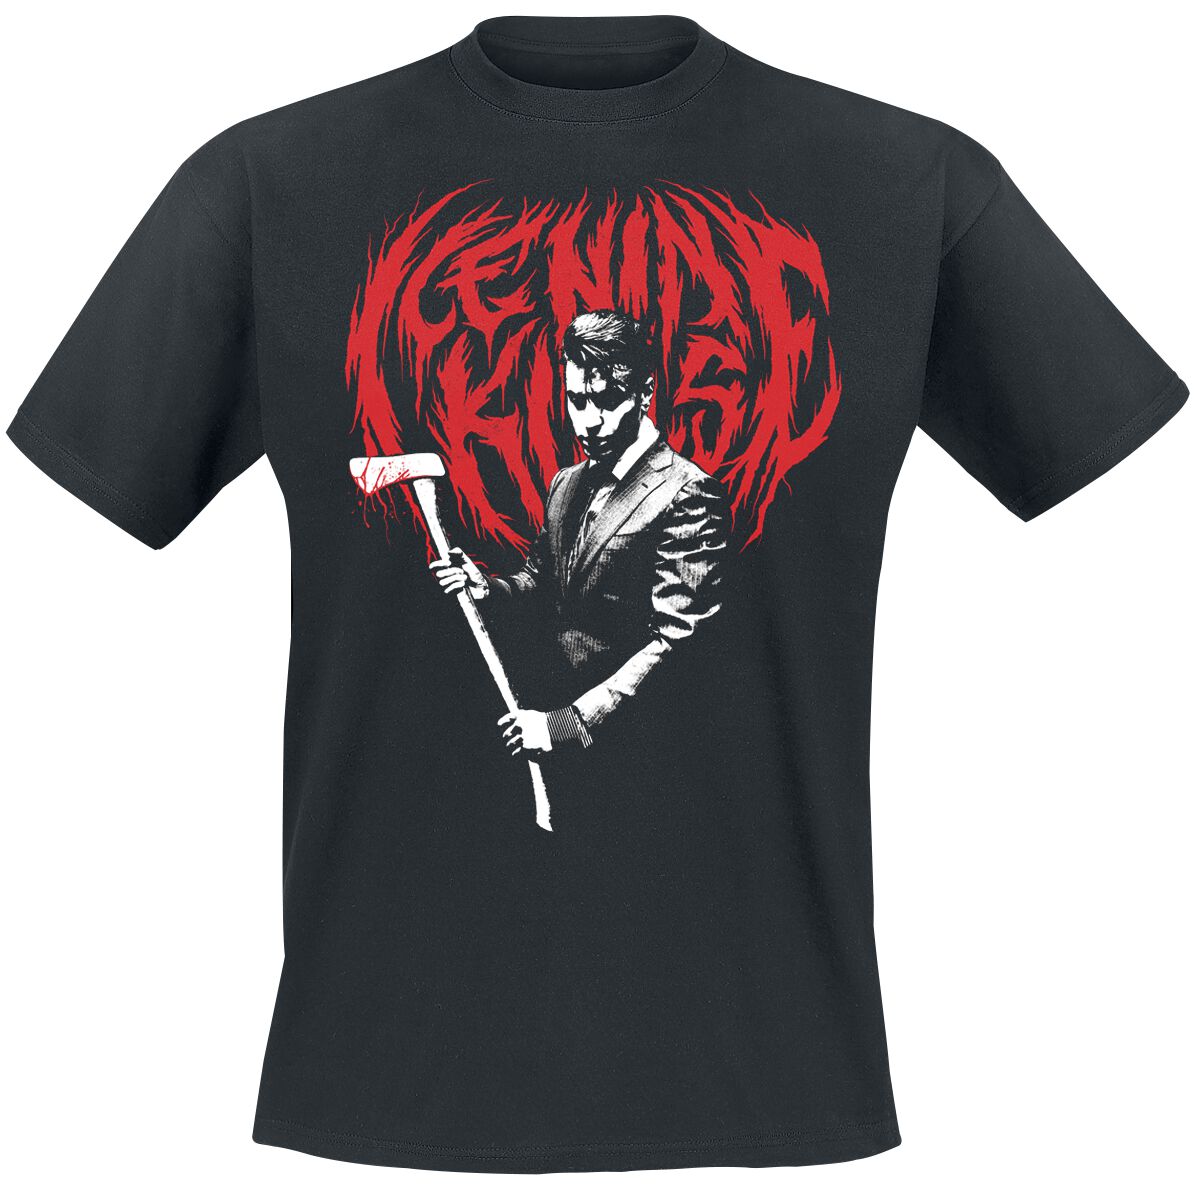 Ice Nine Kills T-Shirt - Hey Paul - S bis 4XL - für Männer - Größe 4XL - schwarz  - Lizenziertes Merchandise!